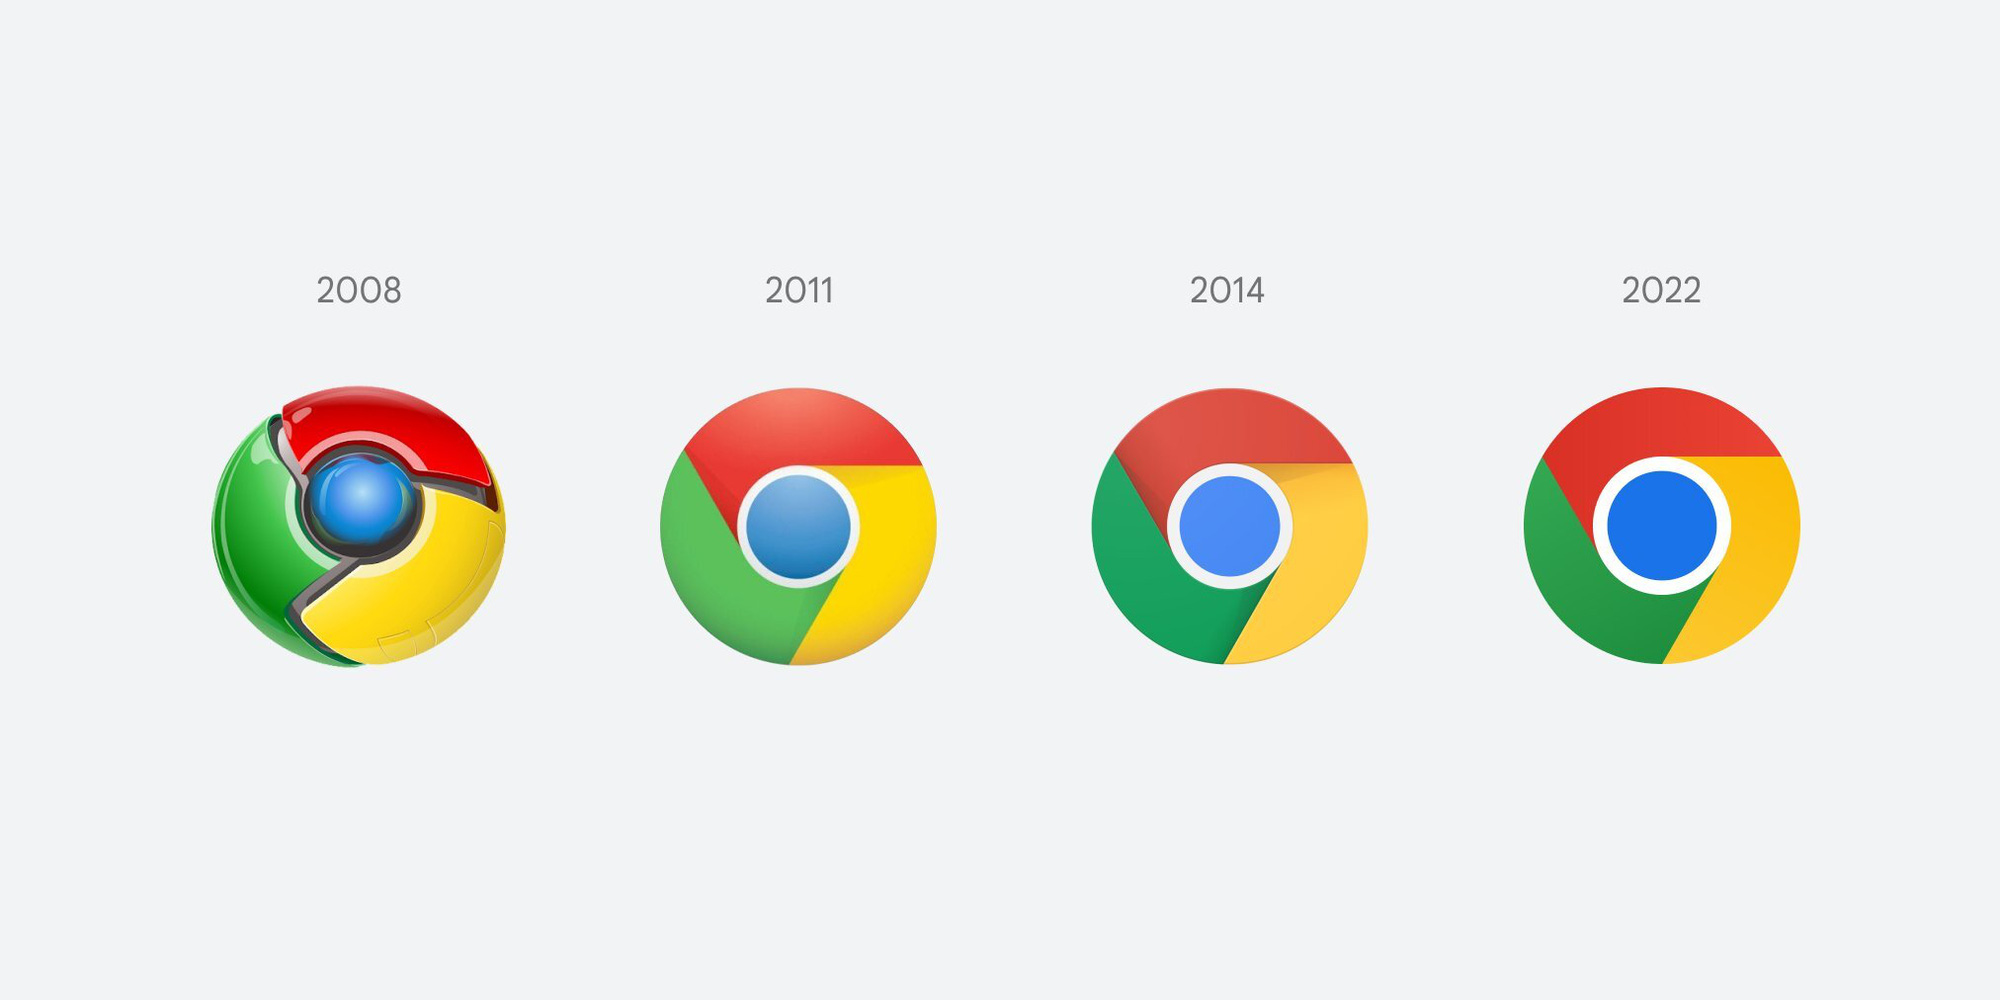 Google Chrome đã tung ra phiên bản mới nhất với thiết kế logo thú vị và hiện đại. Được thiết kế với tông màu mới, logo được đơn giản hóa và thêm các chi tiết động đáng yêu. Cập nhật ngay để trải nghiệm giao diện mới và nhìn thấy sự khác biệt đáng kinh ngạc của Google Chrome 2024!